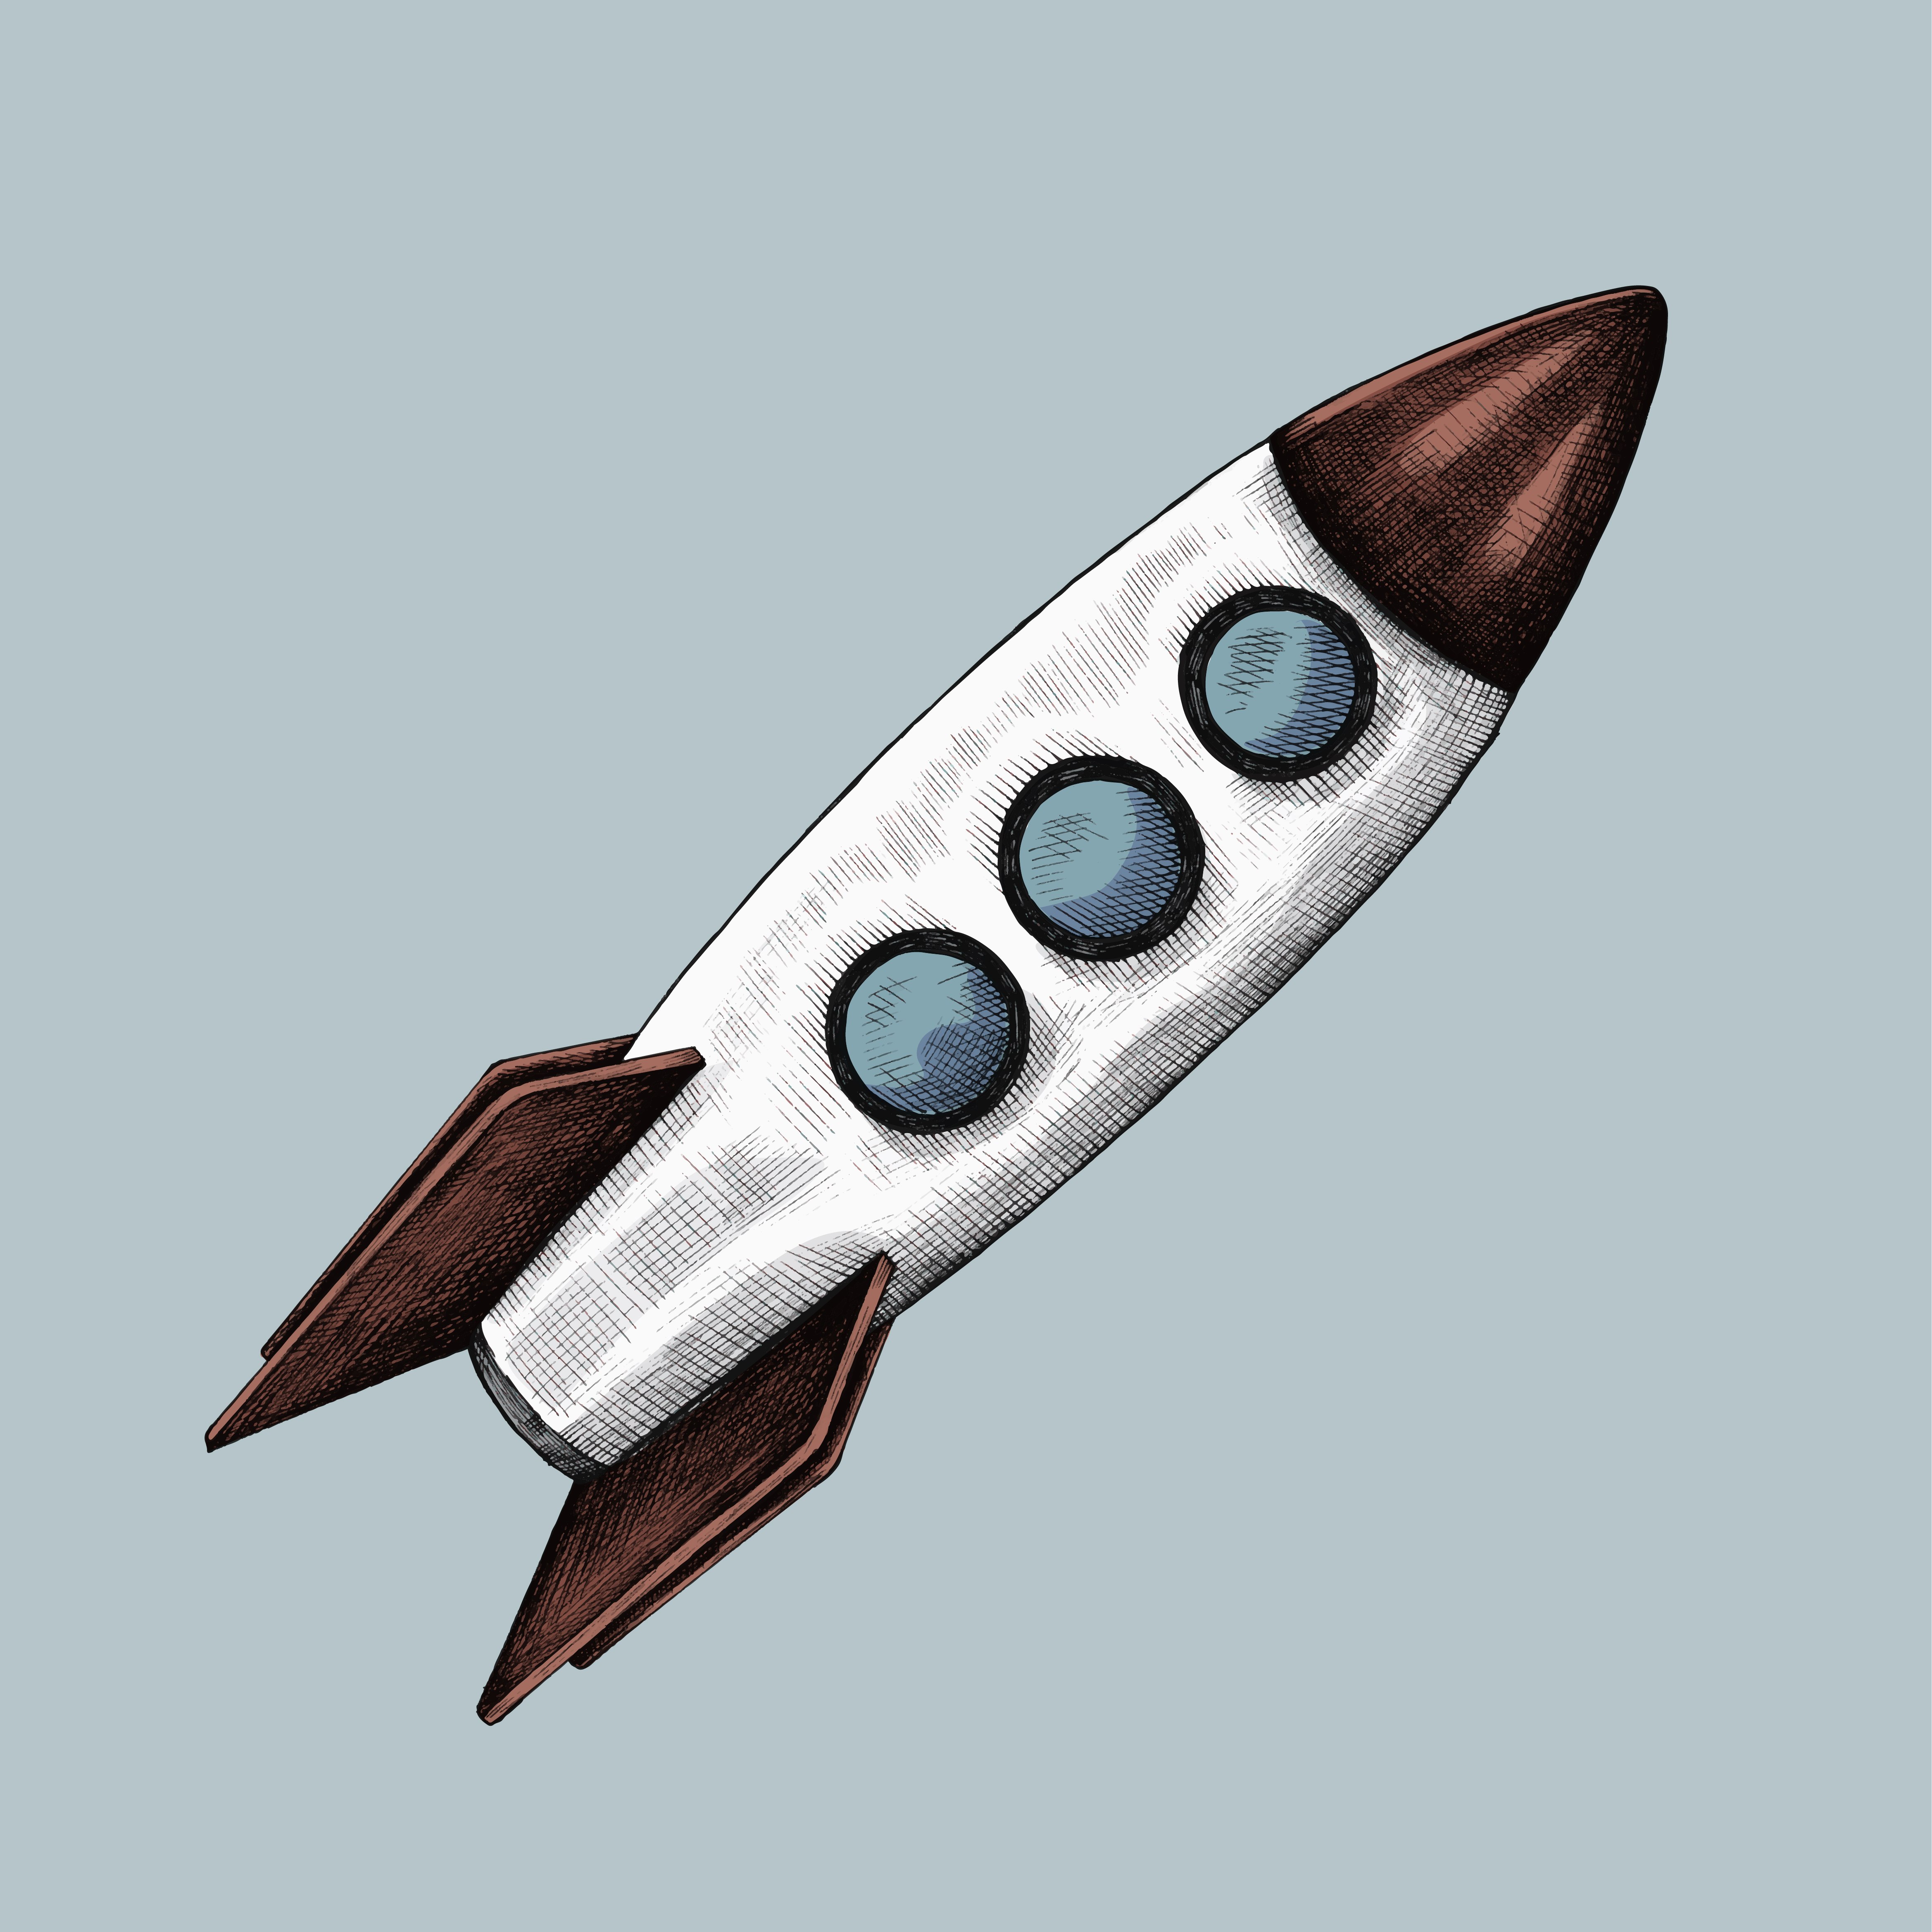 Ракета срисовать. Нарисовать ракету. Ракета эскиз. Ракета иллюстрация. Ракета реалистичная.